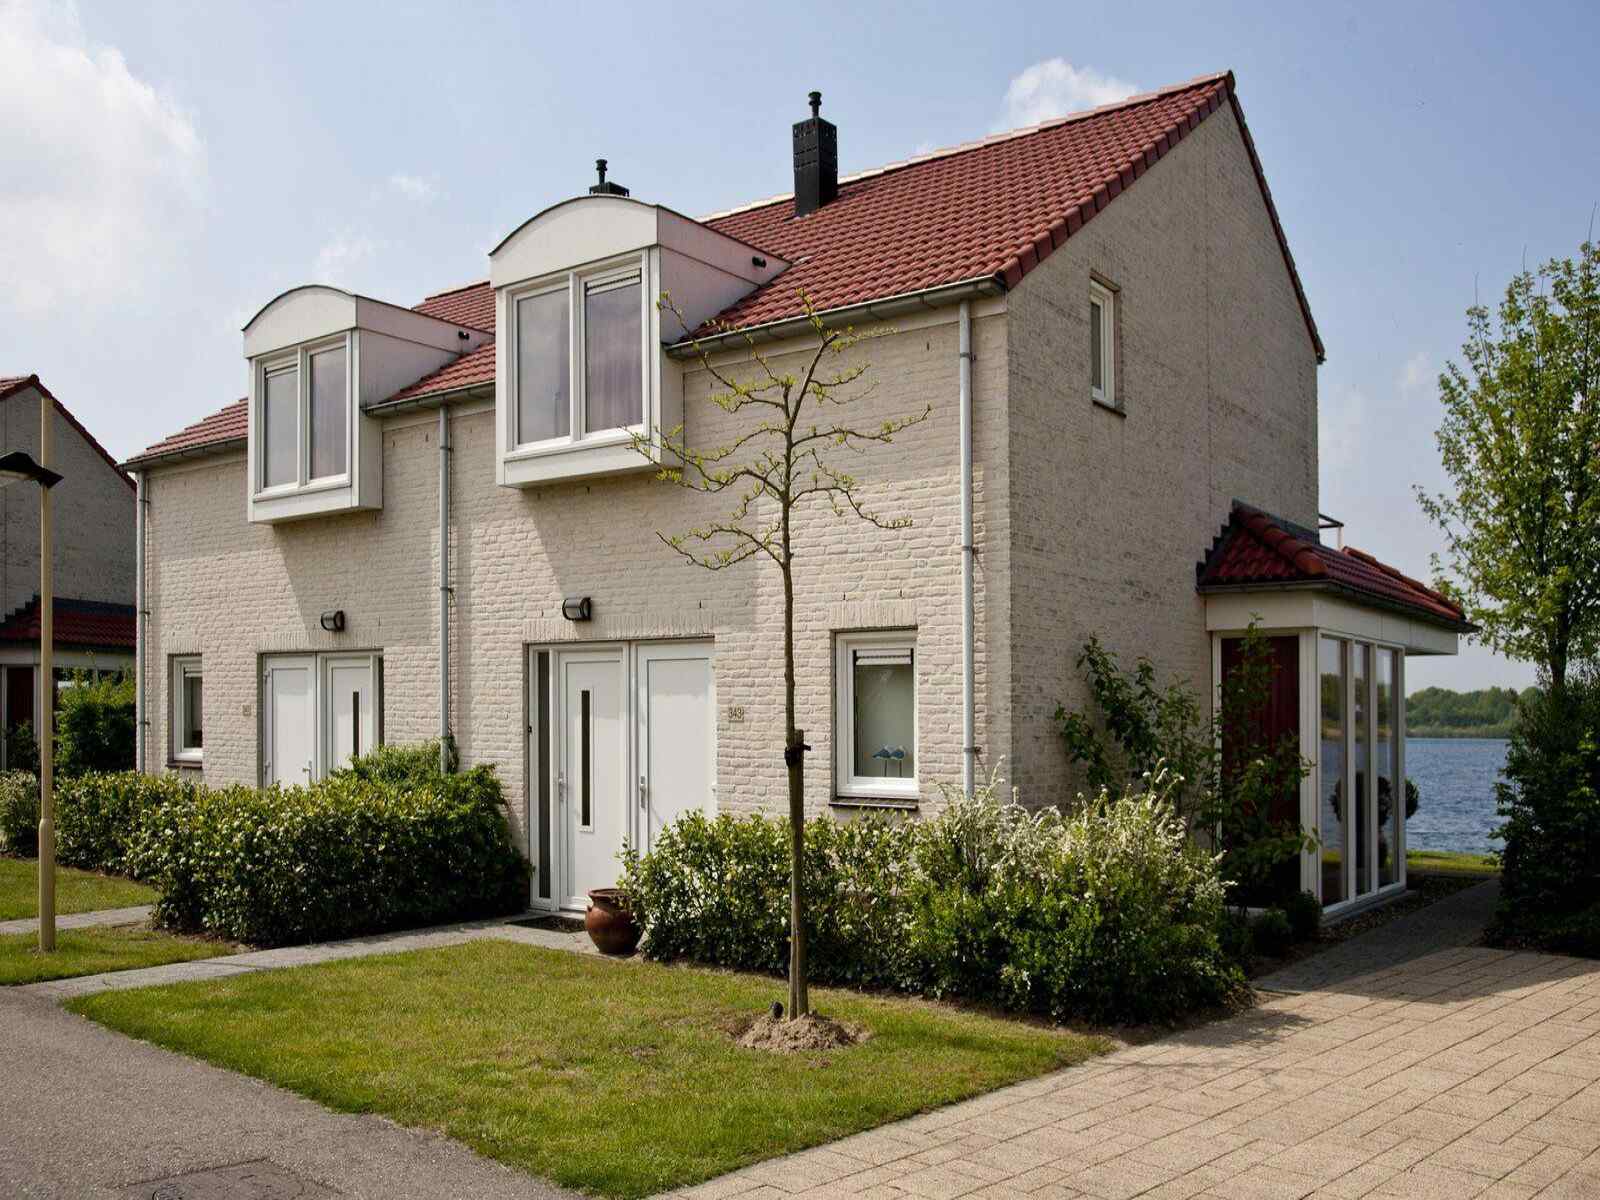 Luxe 6 persoons vakantiehuis aan de Maasplassen nabij Roermond - Limburg Top Merken Winkel